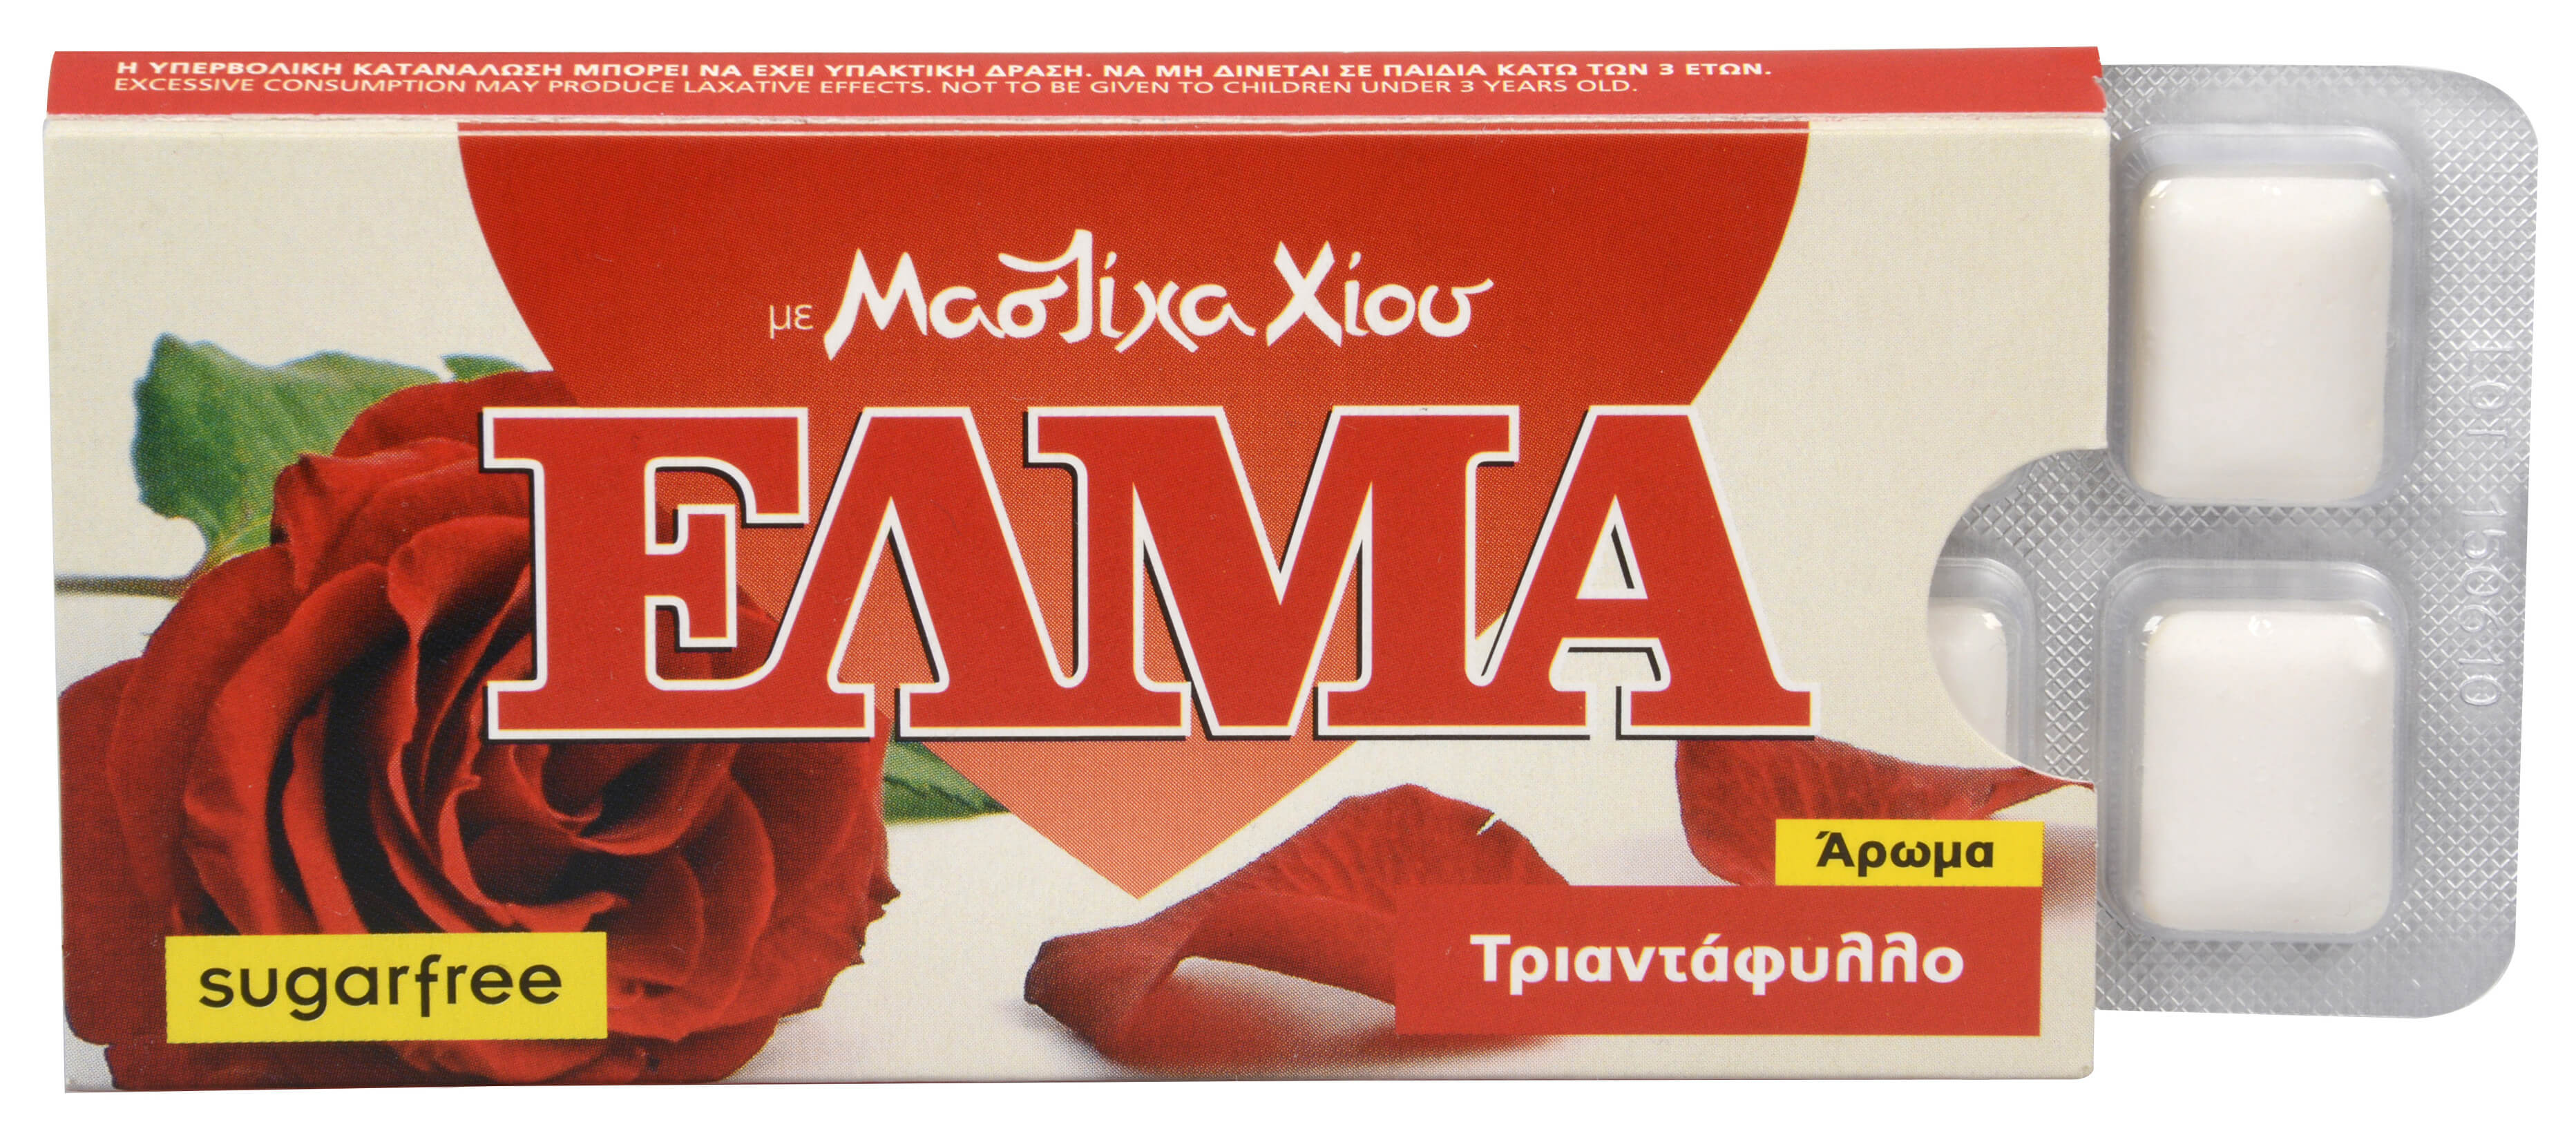 Mastic Life ELMA Rose Chewing Gum 10 ks